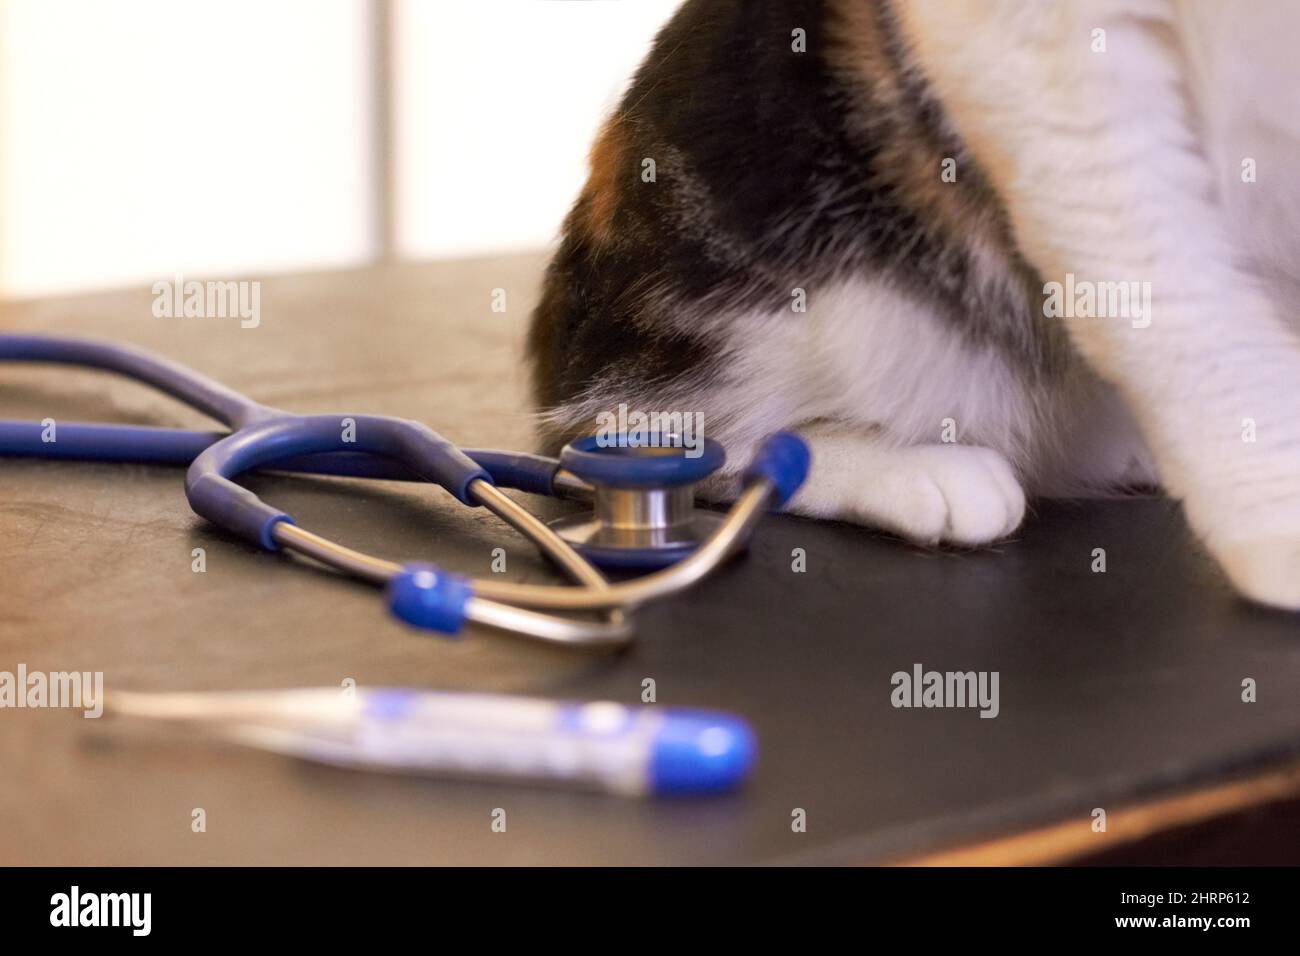 Eine Untersuchung für Ihr Haustier ist wichtig. Abgeschnittene Aufnahme einer Katze auf einem Untersuchungstisch mit Thermometer und Stethoskop. Stockfoto